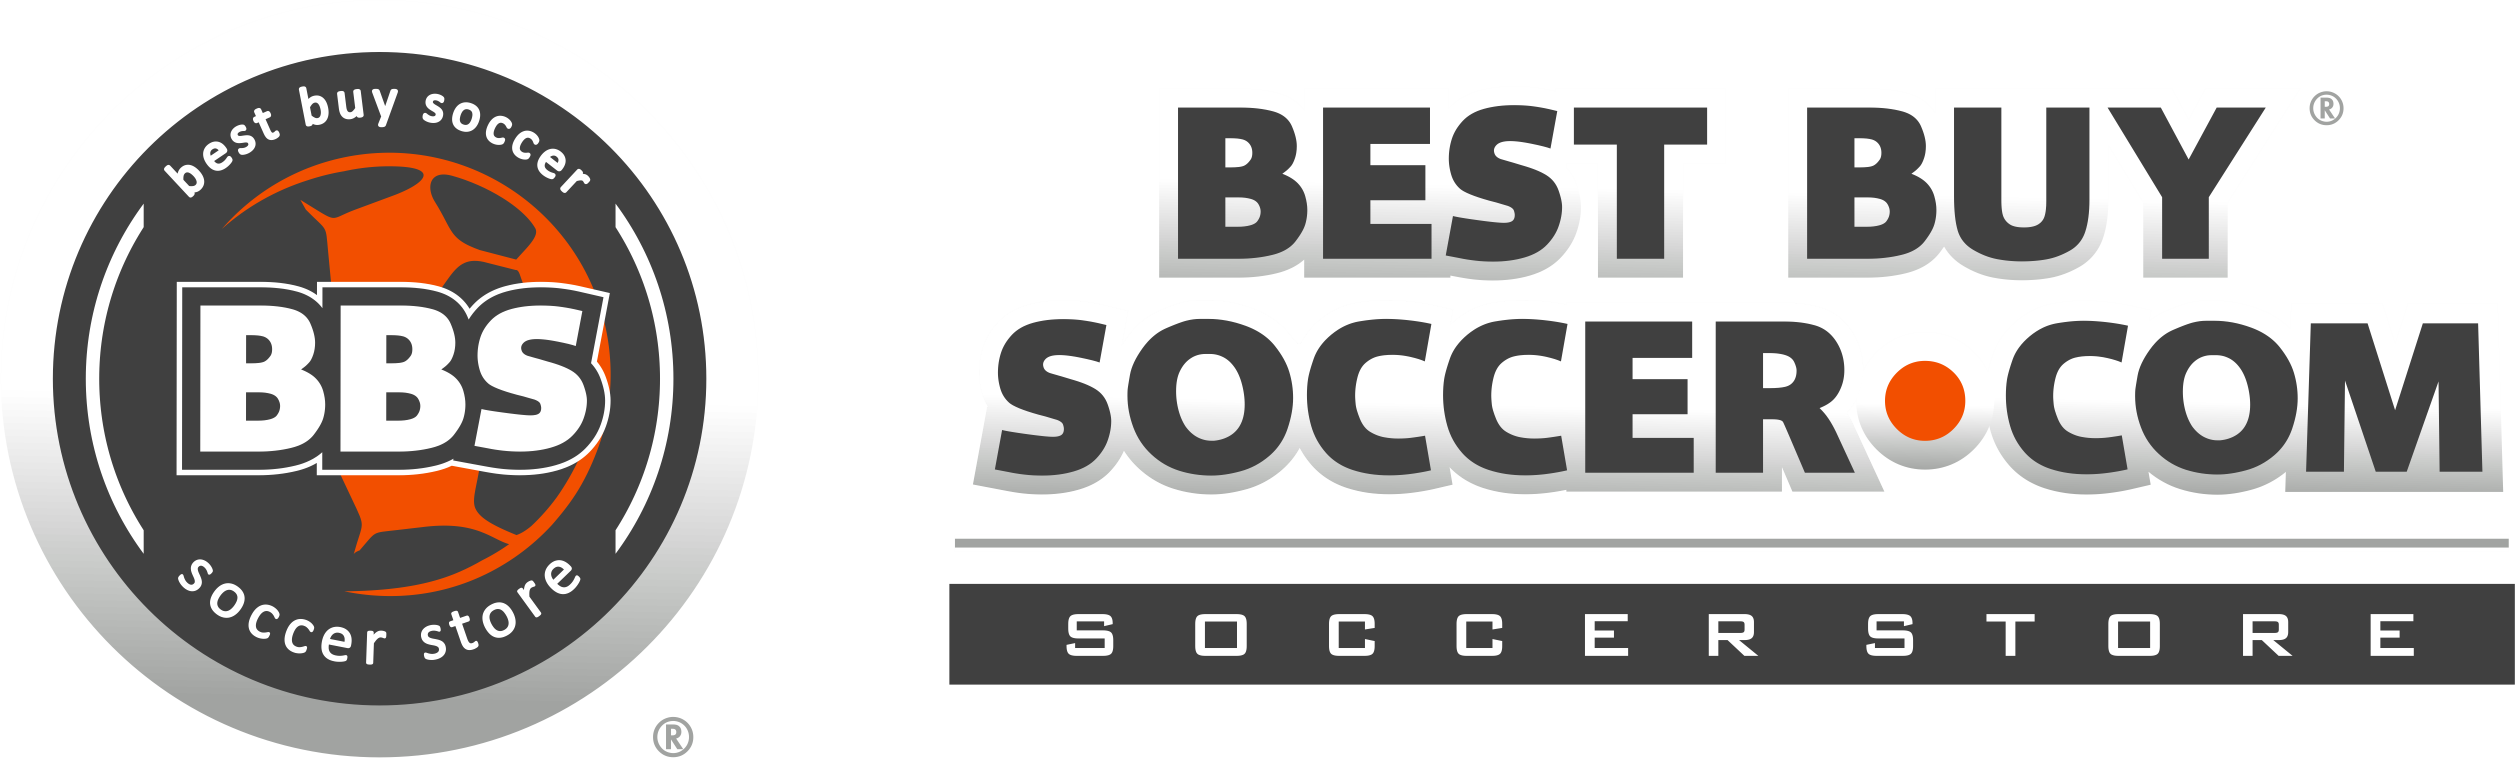 Best Buy Soccer logo